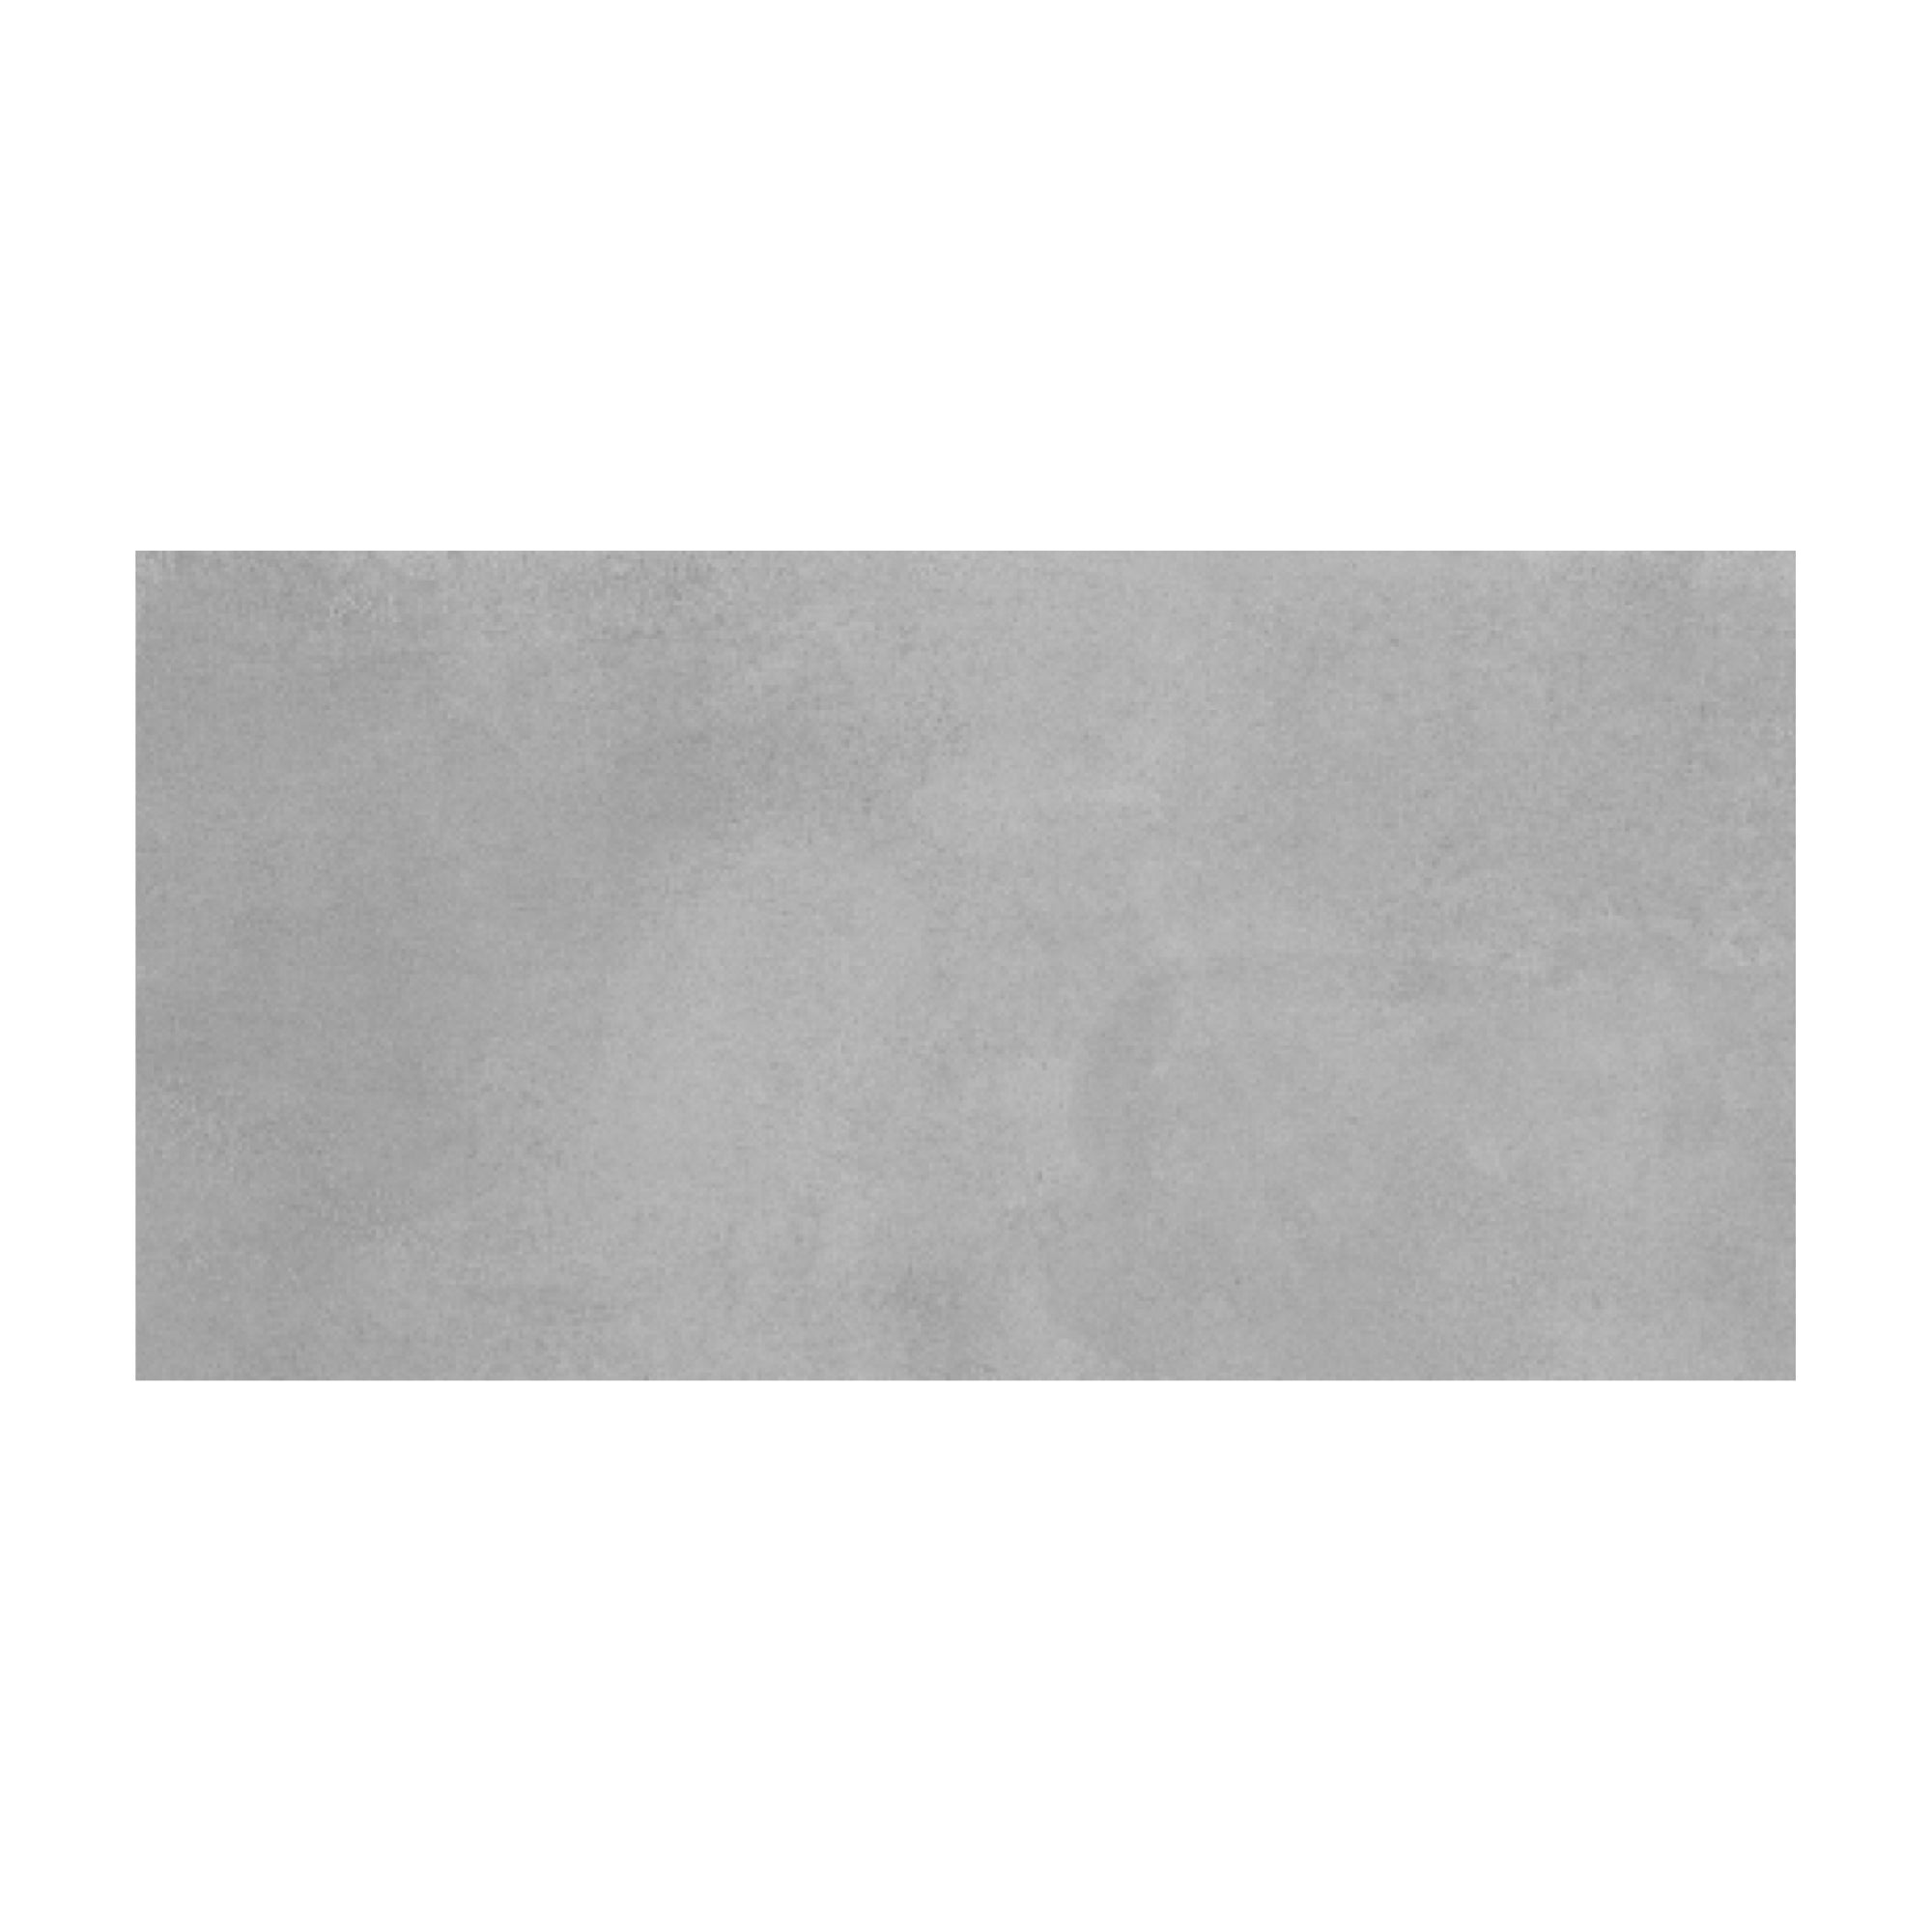 Gres - Cementare Dark Grey Matt 30x60 Rectificado